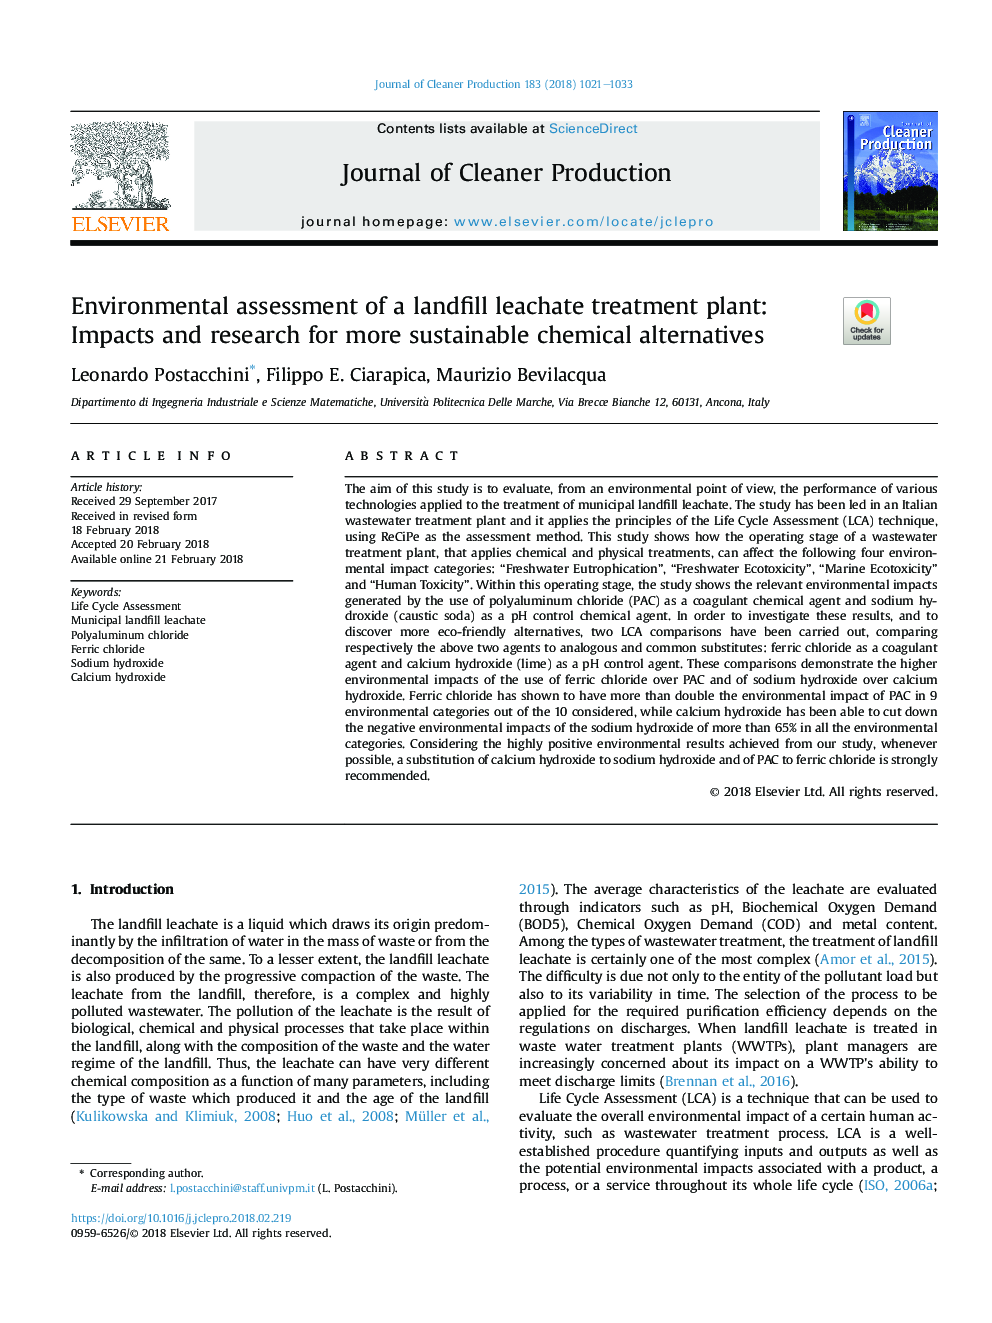 ارزیابی محیط زیستی از یک سیستم تصفیه پساب فاضلاب: اثرات و تحقیقات برای جایگزین های جایگزین شیمیایی پایدار 